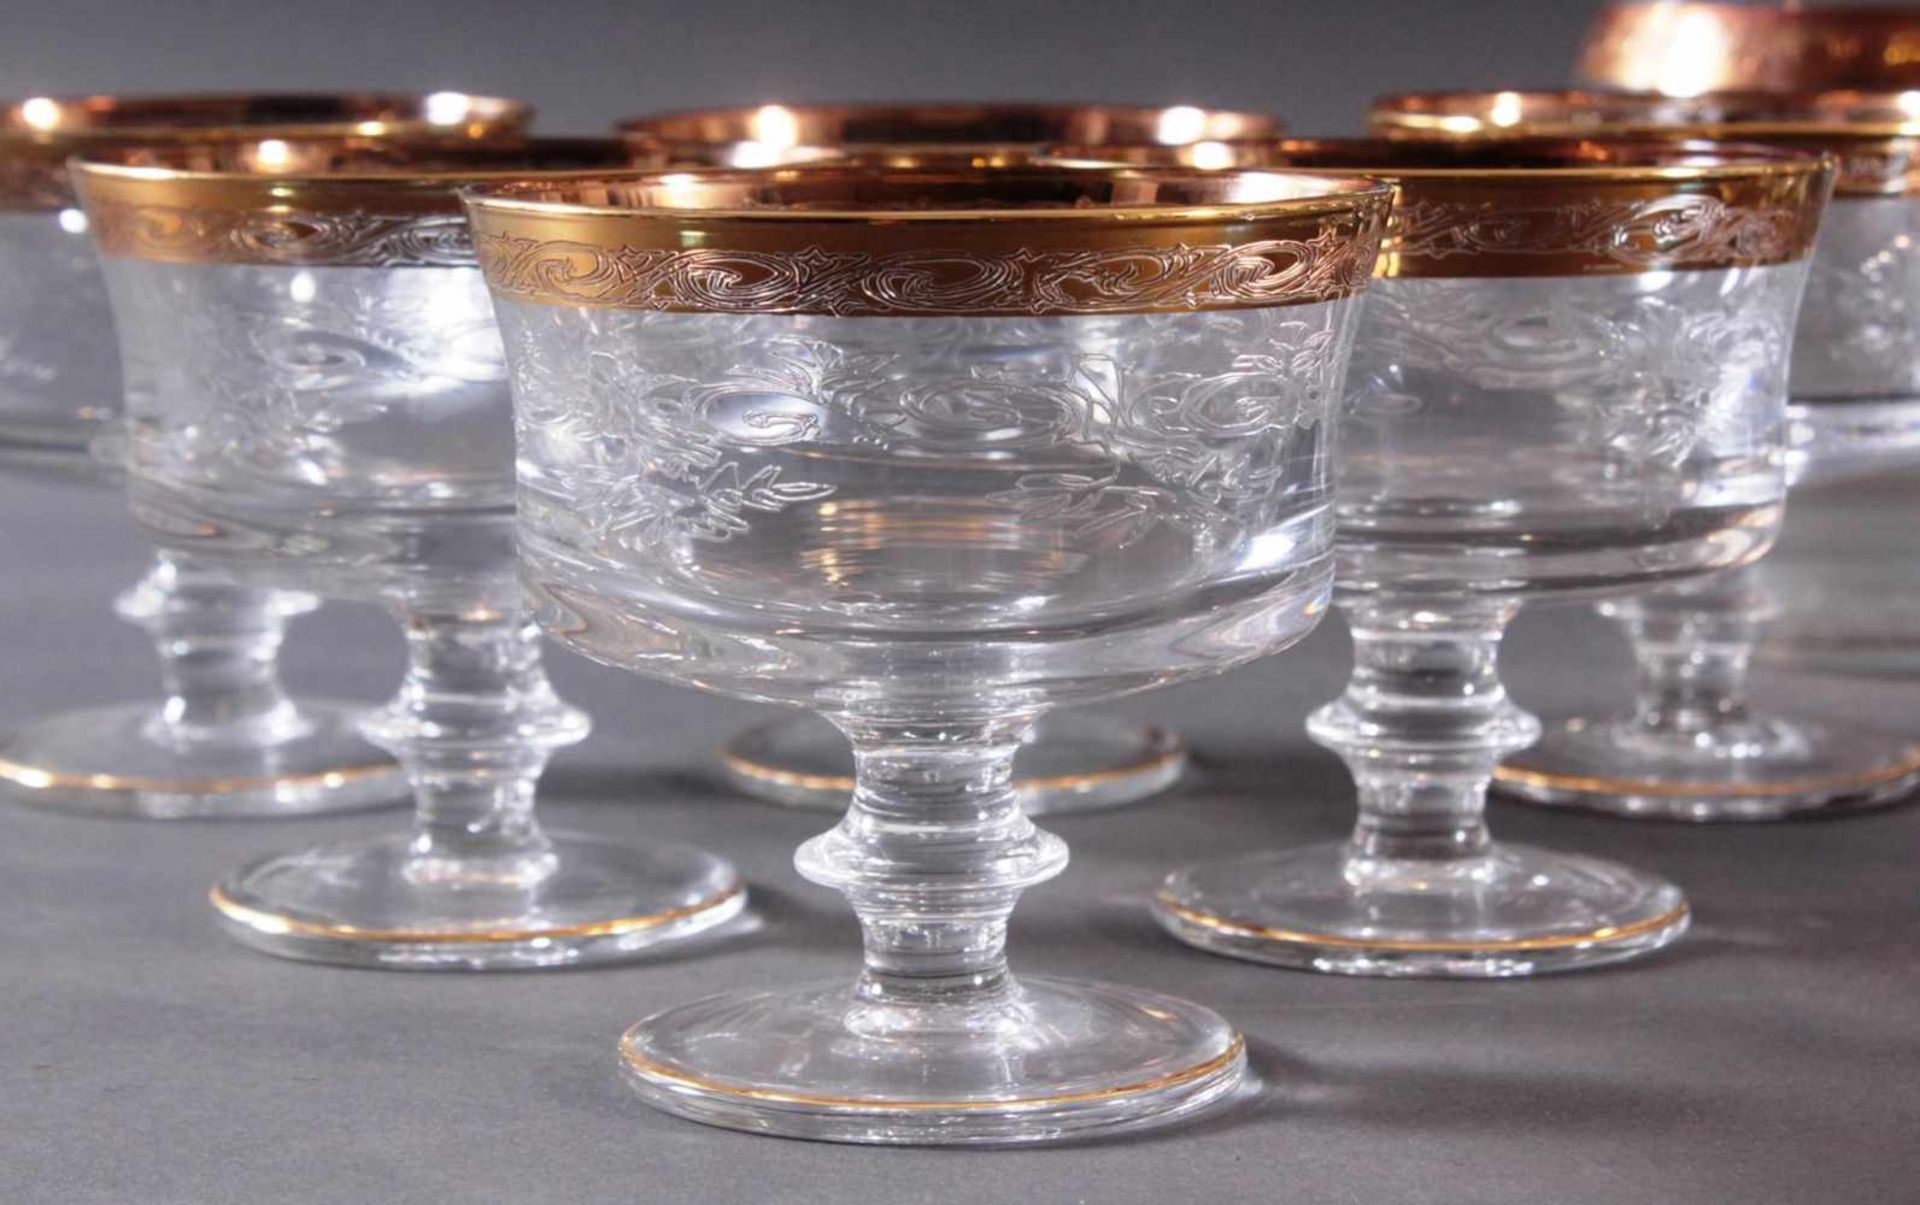 Murano Medici - GläserFarbloses Kristallglas, Goldrand und feines Ätzdekor. 6 Champagner-Schalen, - Bild 2 aus 5